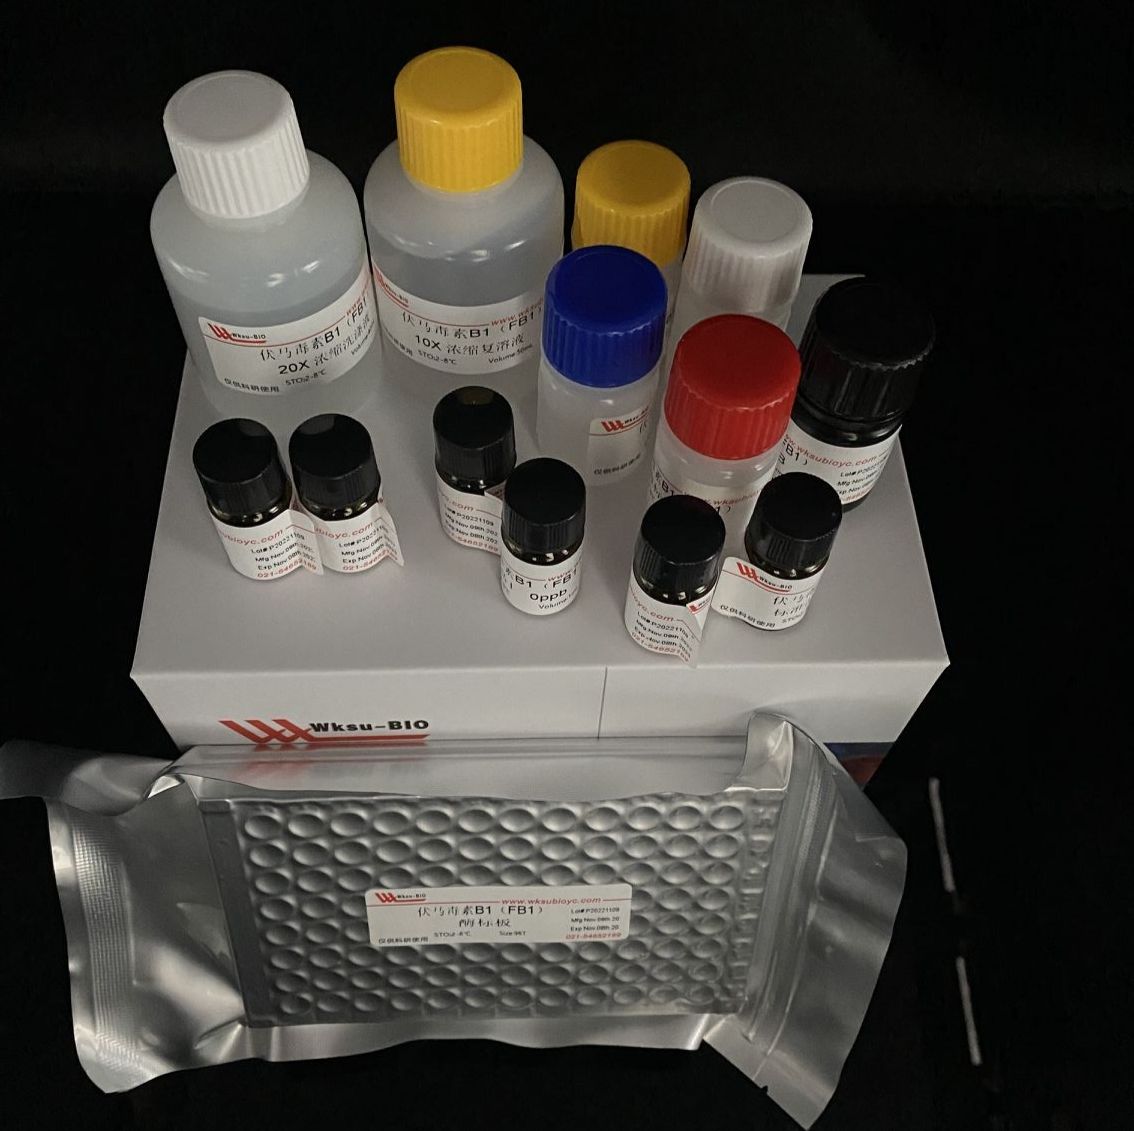 γ-谷氨酰转移酶（γ-GT)/γ-谷氨酰转肽酶活性试剂盒,微板法